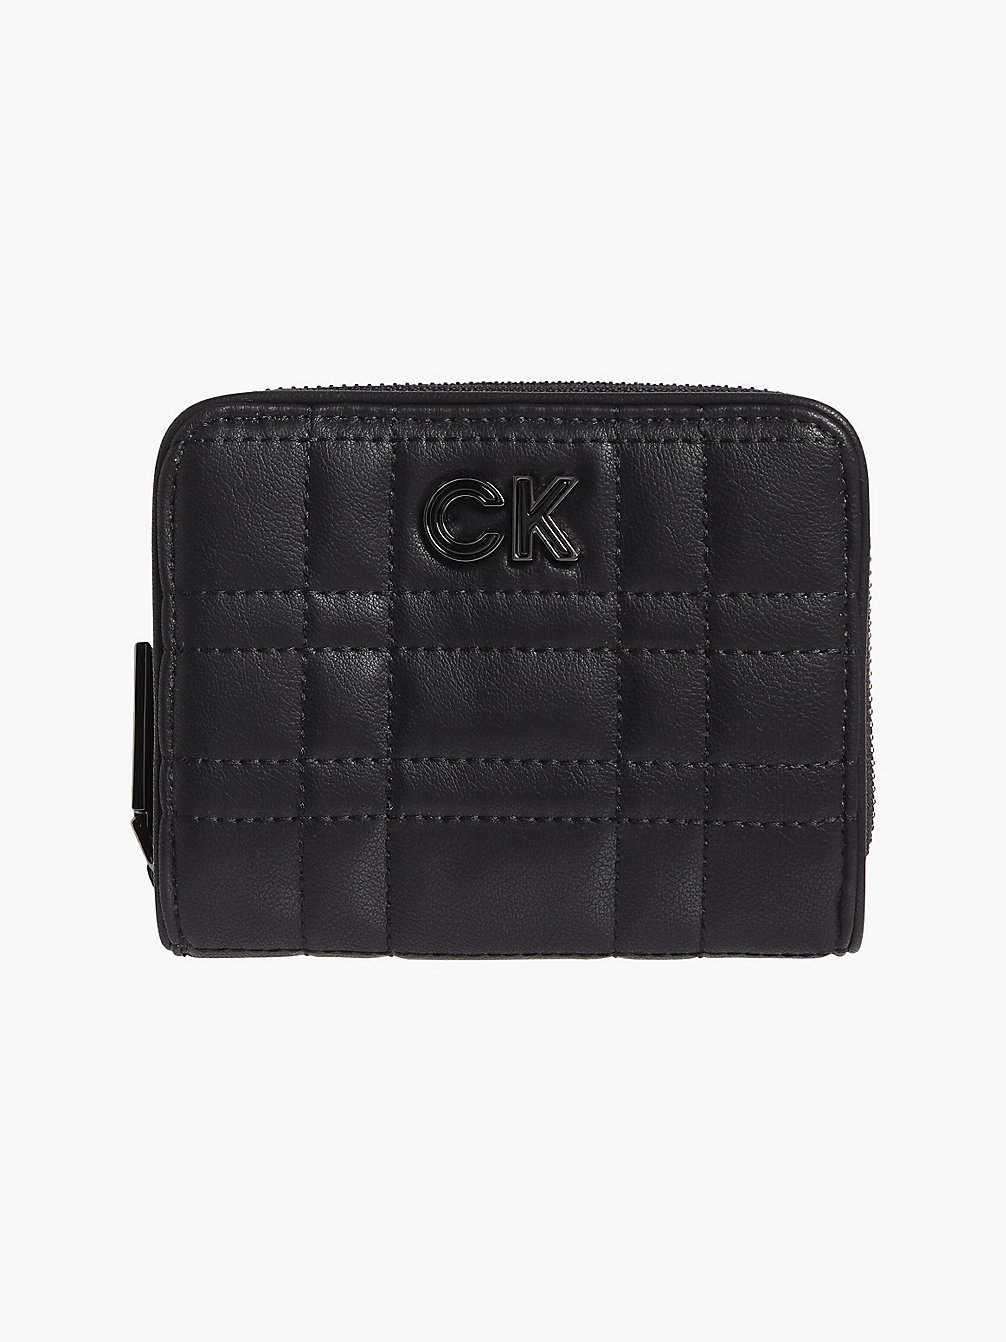 CK BLACK Recycled Quilted Zip Around Wallet undefined women Calvin Klein